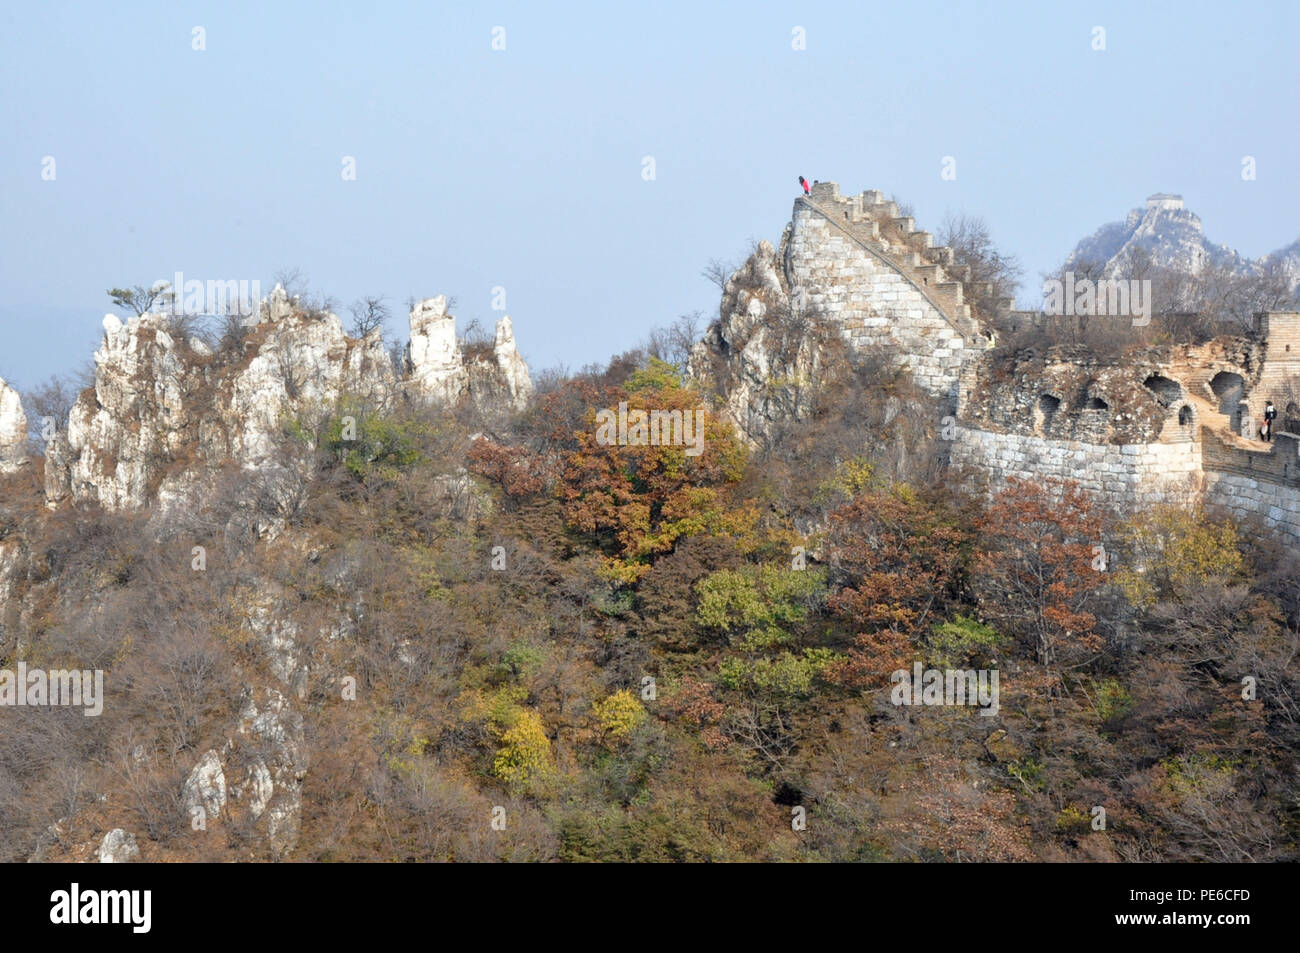 Beijin, Beijin, China. 13 Aug, 2018. Peking, China - Große Mauer Jiankou ist von einigen Menschen als den schönsten Abschnitt der Großen Mauer betrachtet und ist ein gutes Beispiel für ''Wild Great Wall''. Es ist eine beliebte fotografische Hotspot geworden und Wanderziele in den letzten Tagen. Jiankou ist als ''Pfeil Nock'' auf Englisch übersetzt, da die Form der Berge, wo die walll errichtet wurde, ist wie ein Pfeil mit der collpased Ridge öffnen wie der Pfeil Nock. Der größte Teil der Mauer wurde entlang der Kanten mit steilen Klippen auf jeder Seite gebaut. Deshalb müssen Sie für eine gute Fitness und g vorbereiten Stockfoto